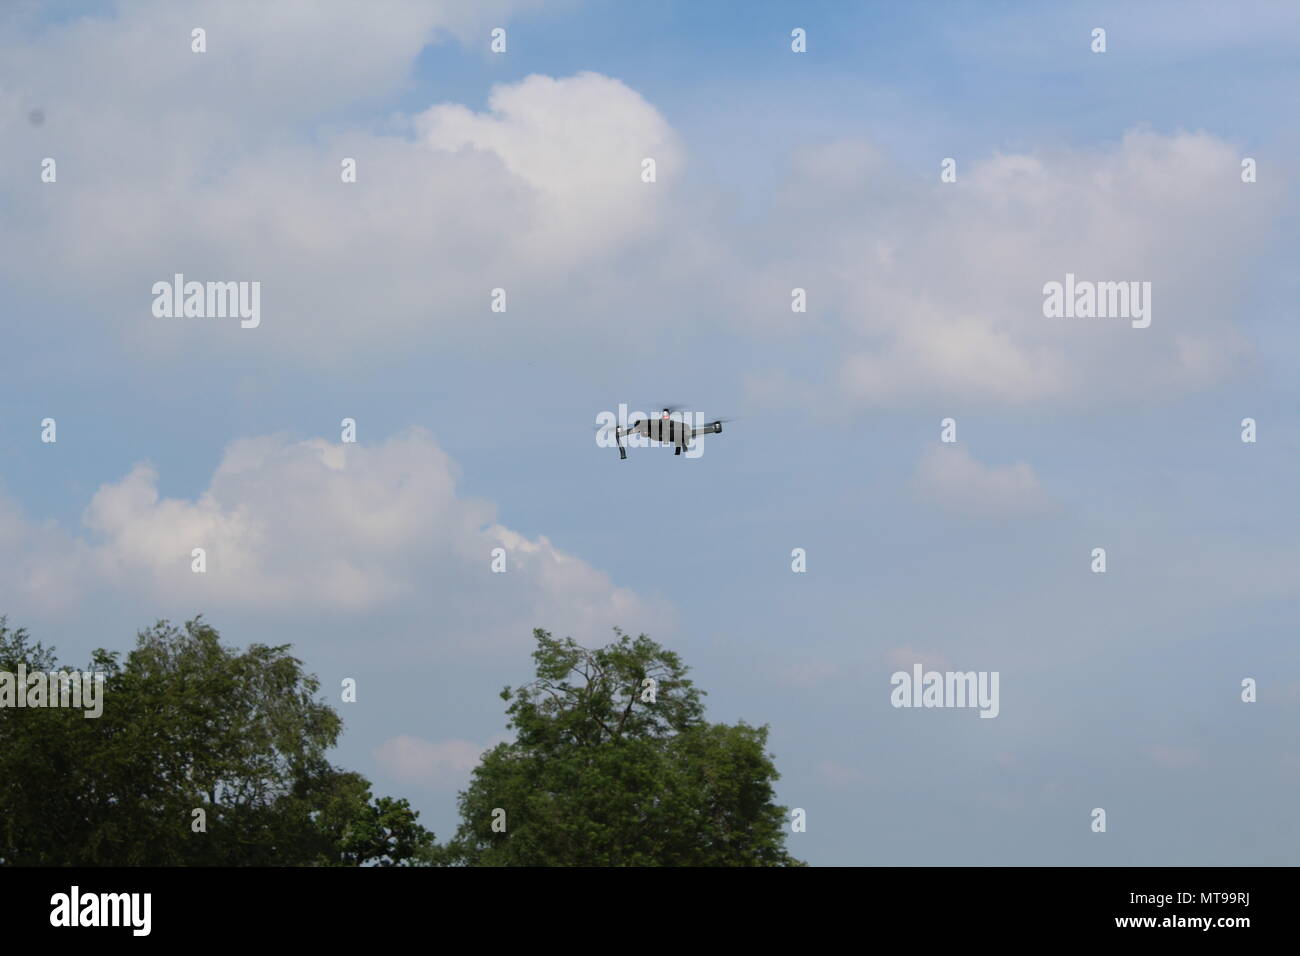 Vol de drones au-dessus des arbres Banque D'Images